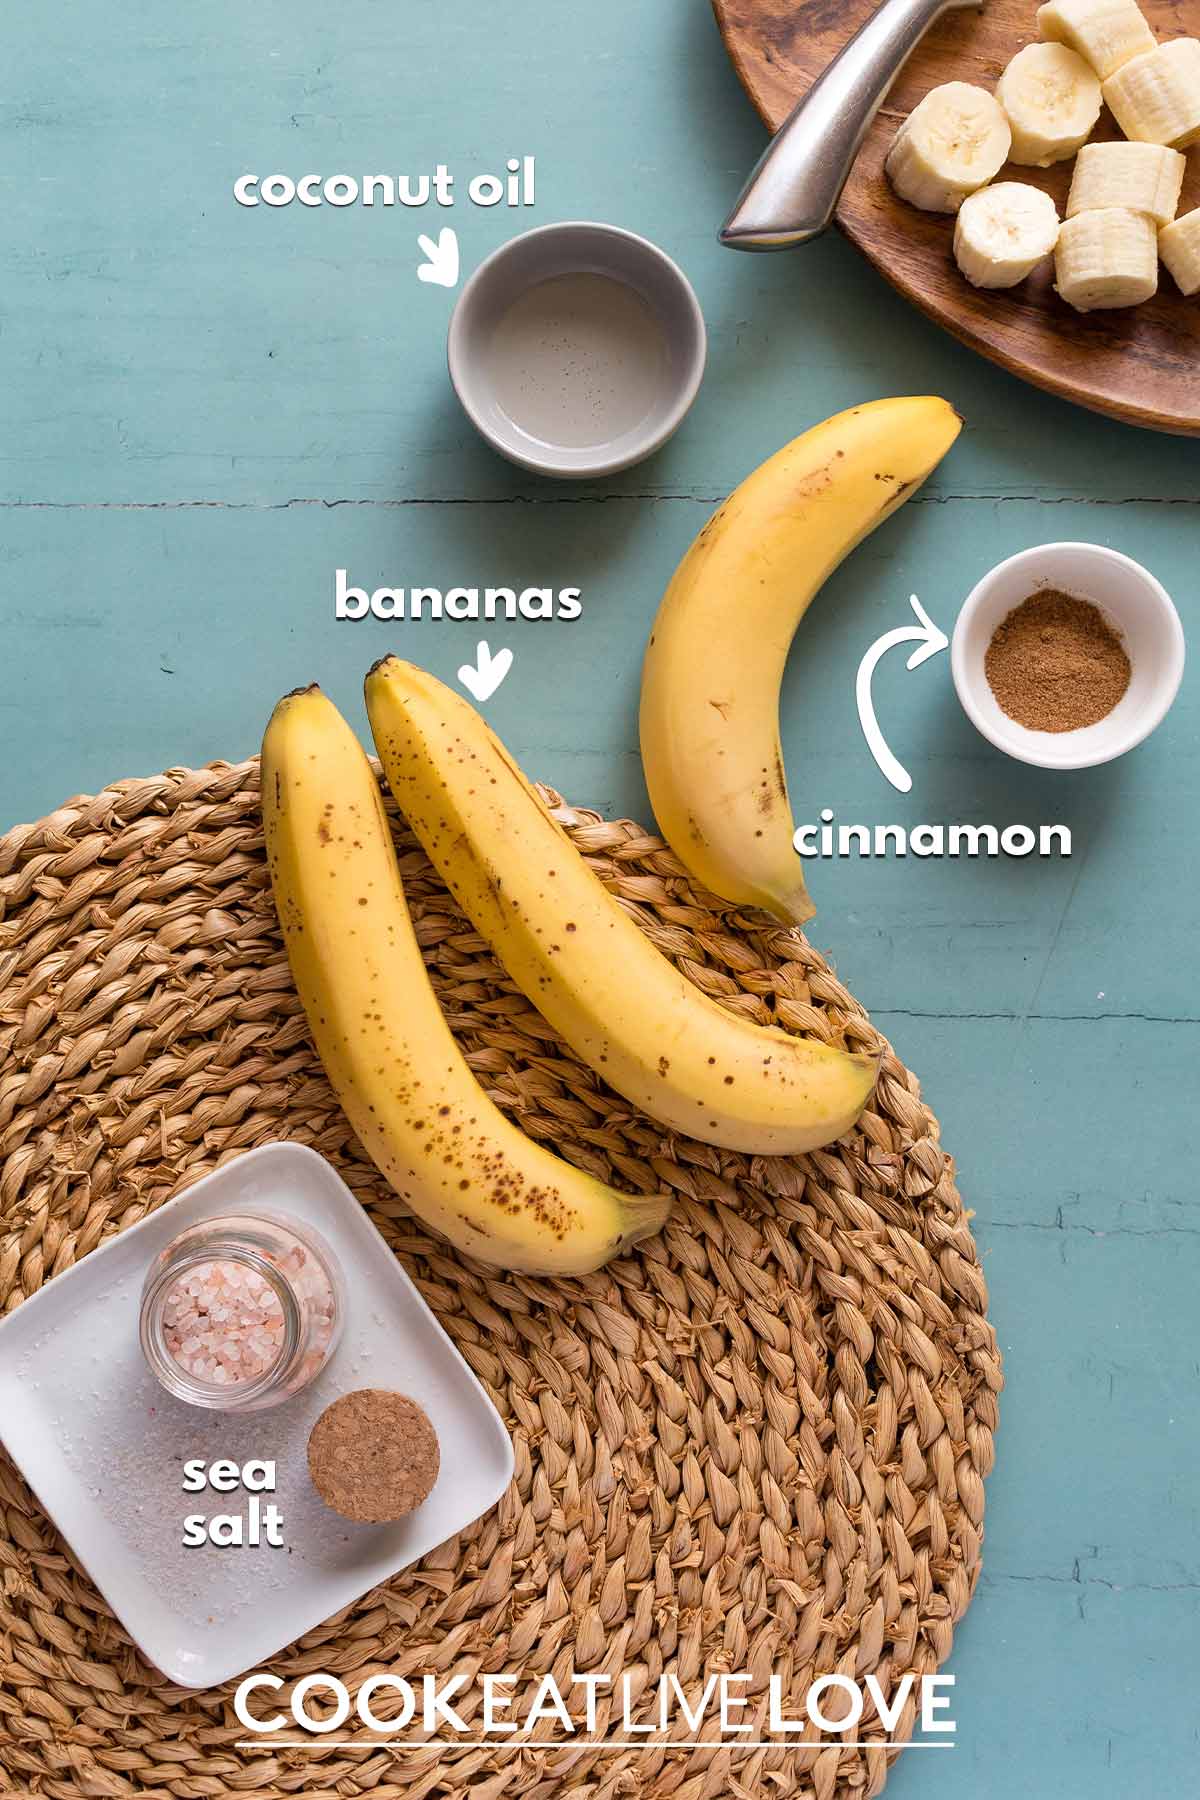 Ingredients to make air fryer bananas.